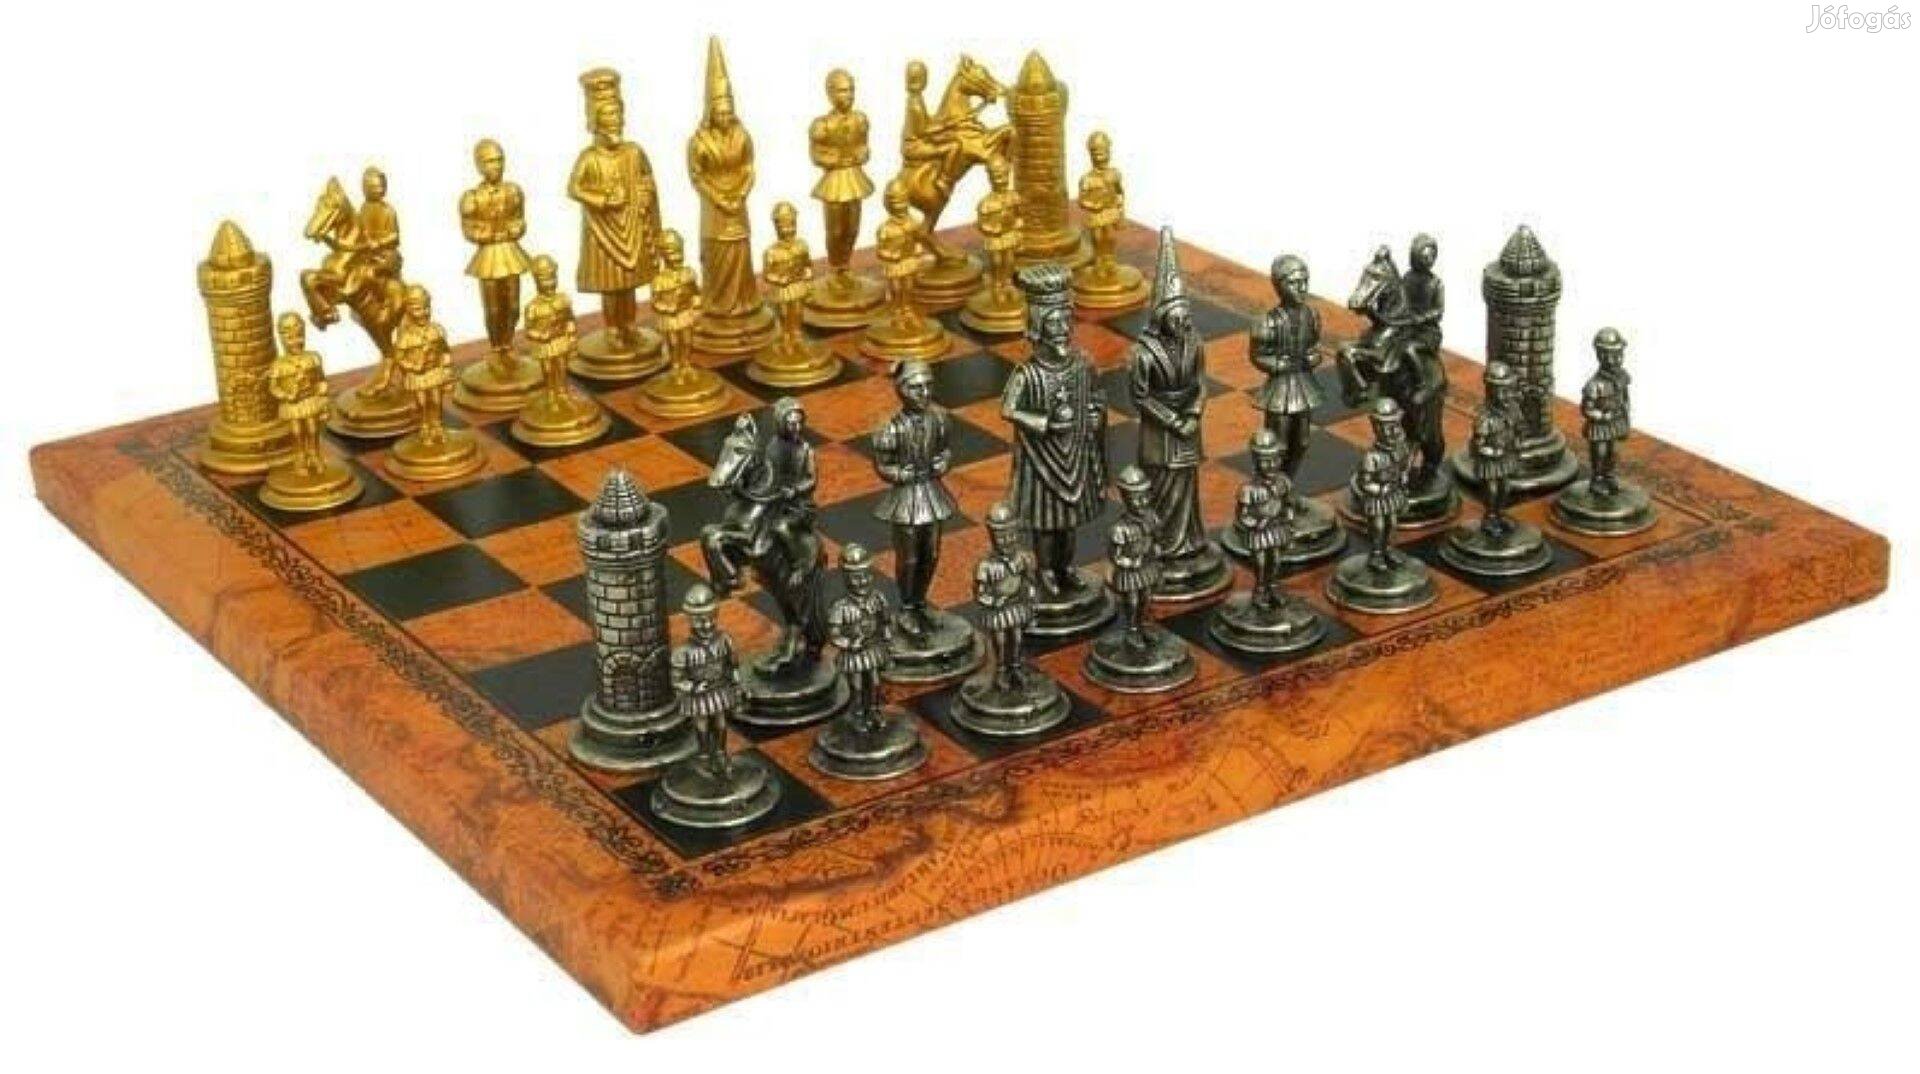 Királyos sakk készlet (10070)